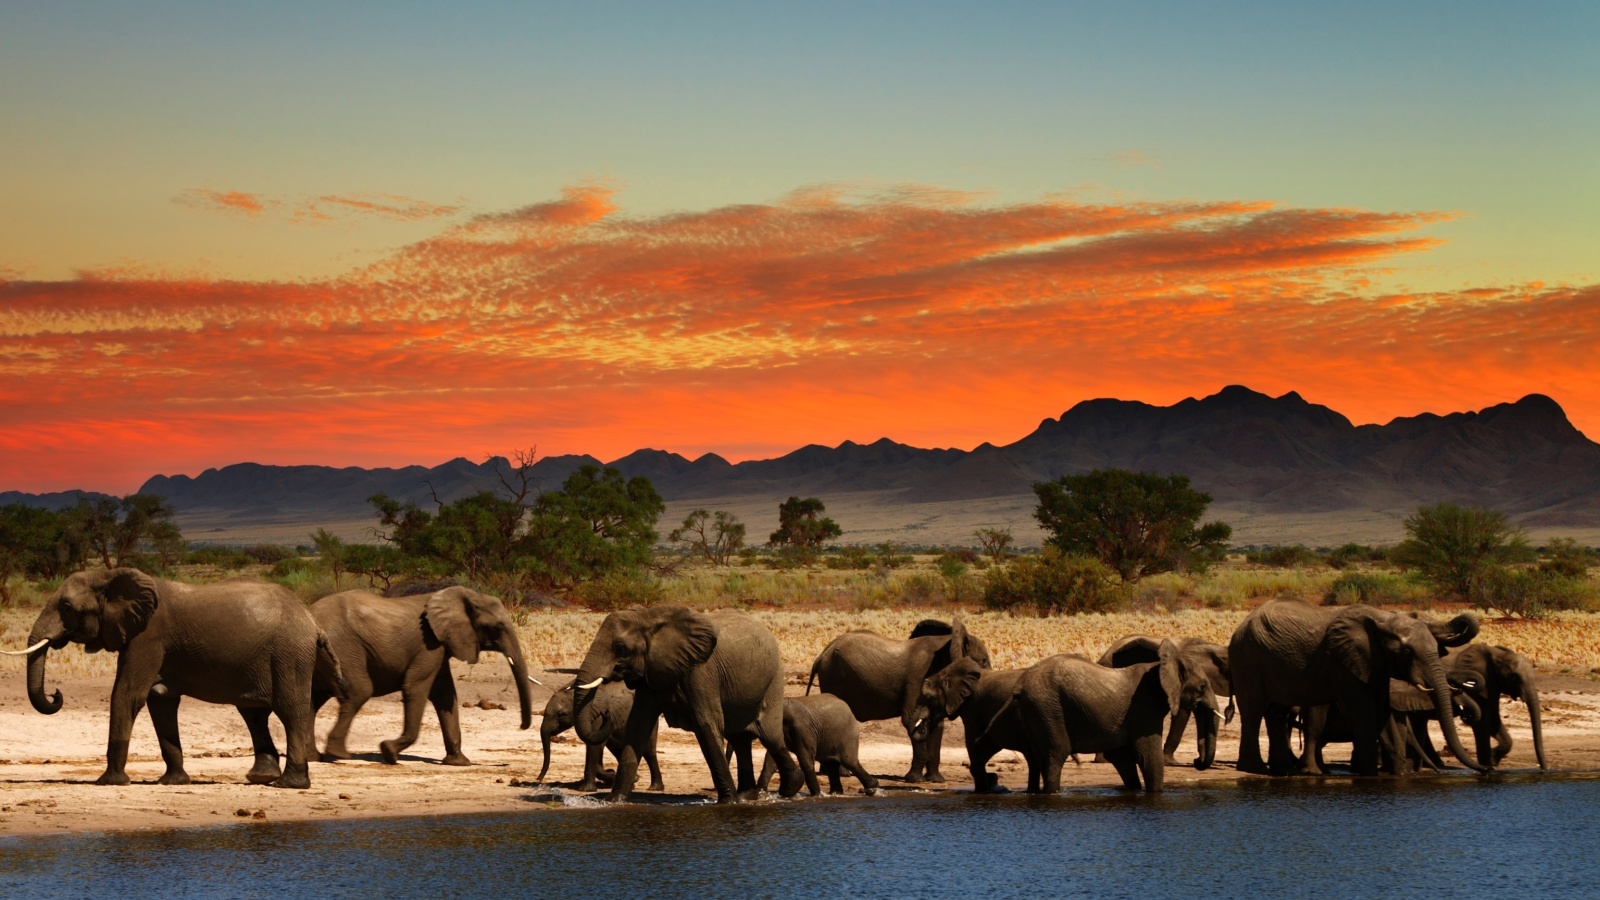 Herd of elephants Safari wallpaper 1600x900